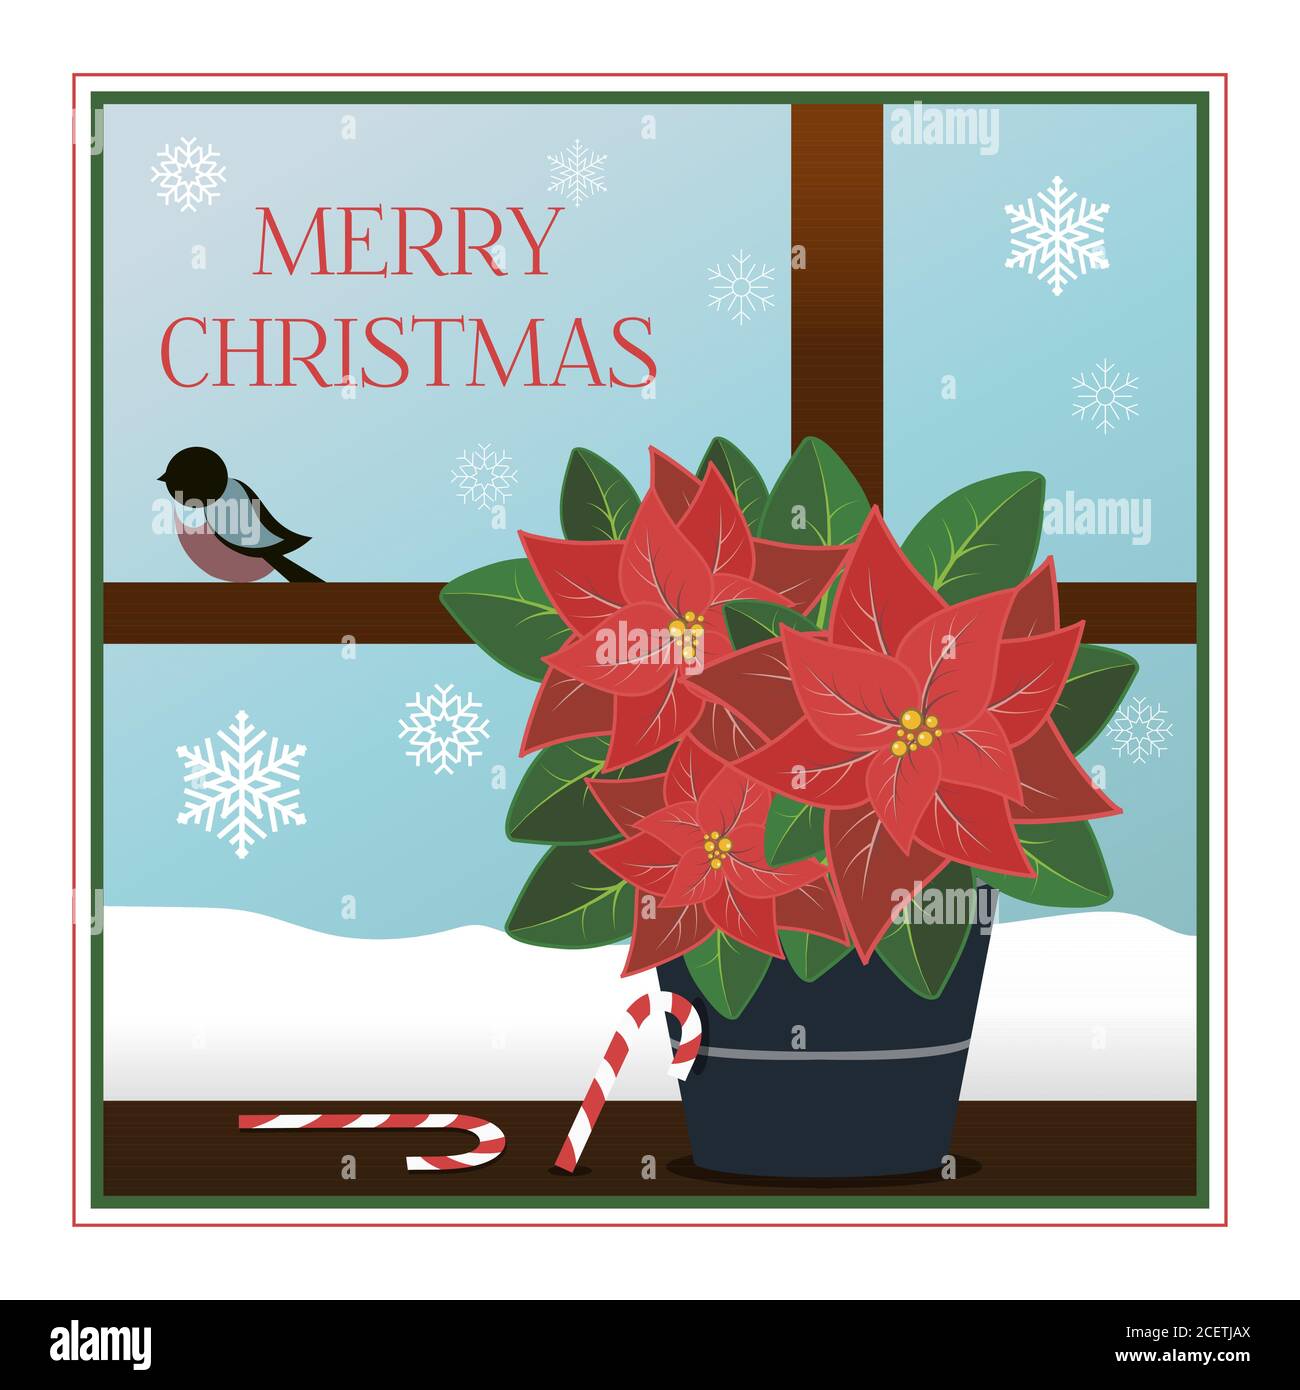 Weihnachtskarte im flachen Stil. Anschauliche Illustration mit gestreiften Zuckerstöcken und einer Weihnachtssterne. Ein Fenster mit Blick auf einen frostigen Urlaubmorgen mit schönen Schneeflocken und Gimpelfinken. Poster für Grüße, Partys, Verkäufe oder Web-Anzeigen. Chirstmas Simple Typography Grußposter Stock Vektor